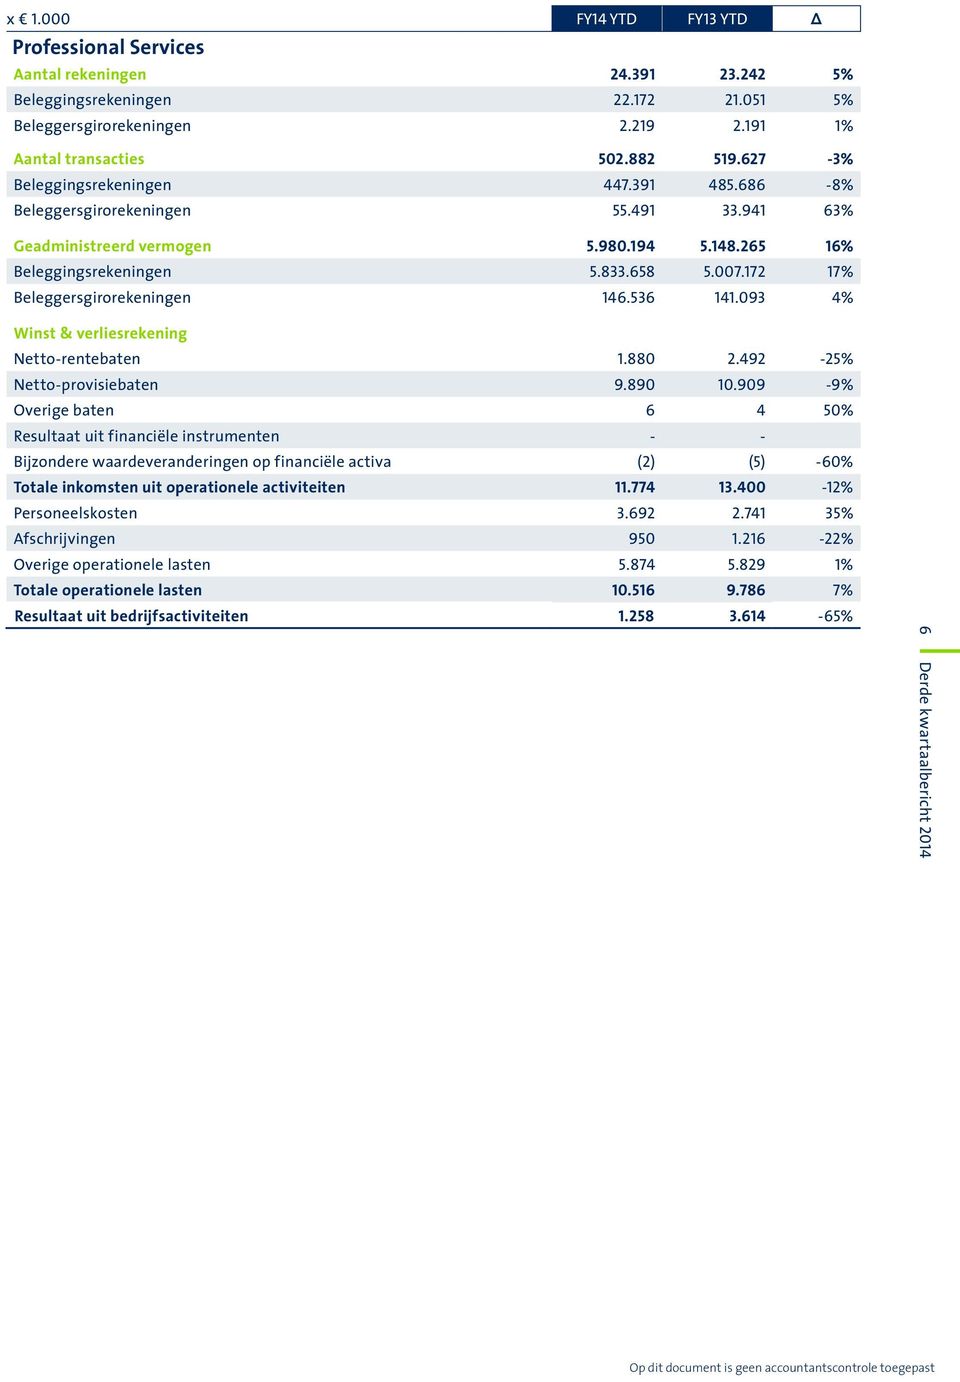 172 17% Beleggersgirorekeningen 146.536 141.093 4% Winst & verliesrekening Netto-rentebaten 1.880 2.492-25% Netto-provisiebaten 9.890 10.